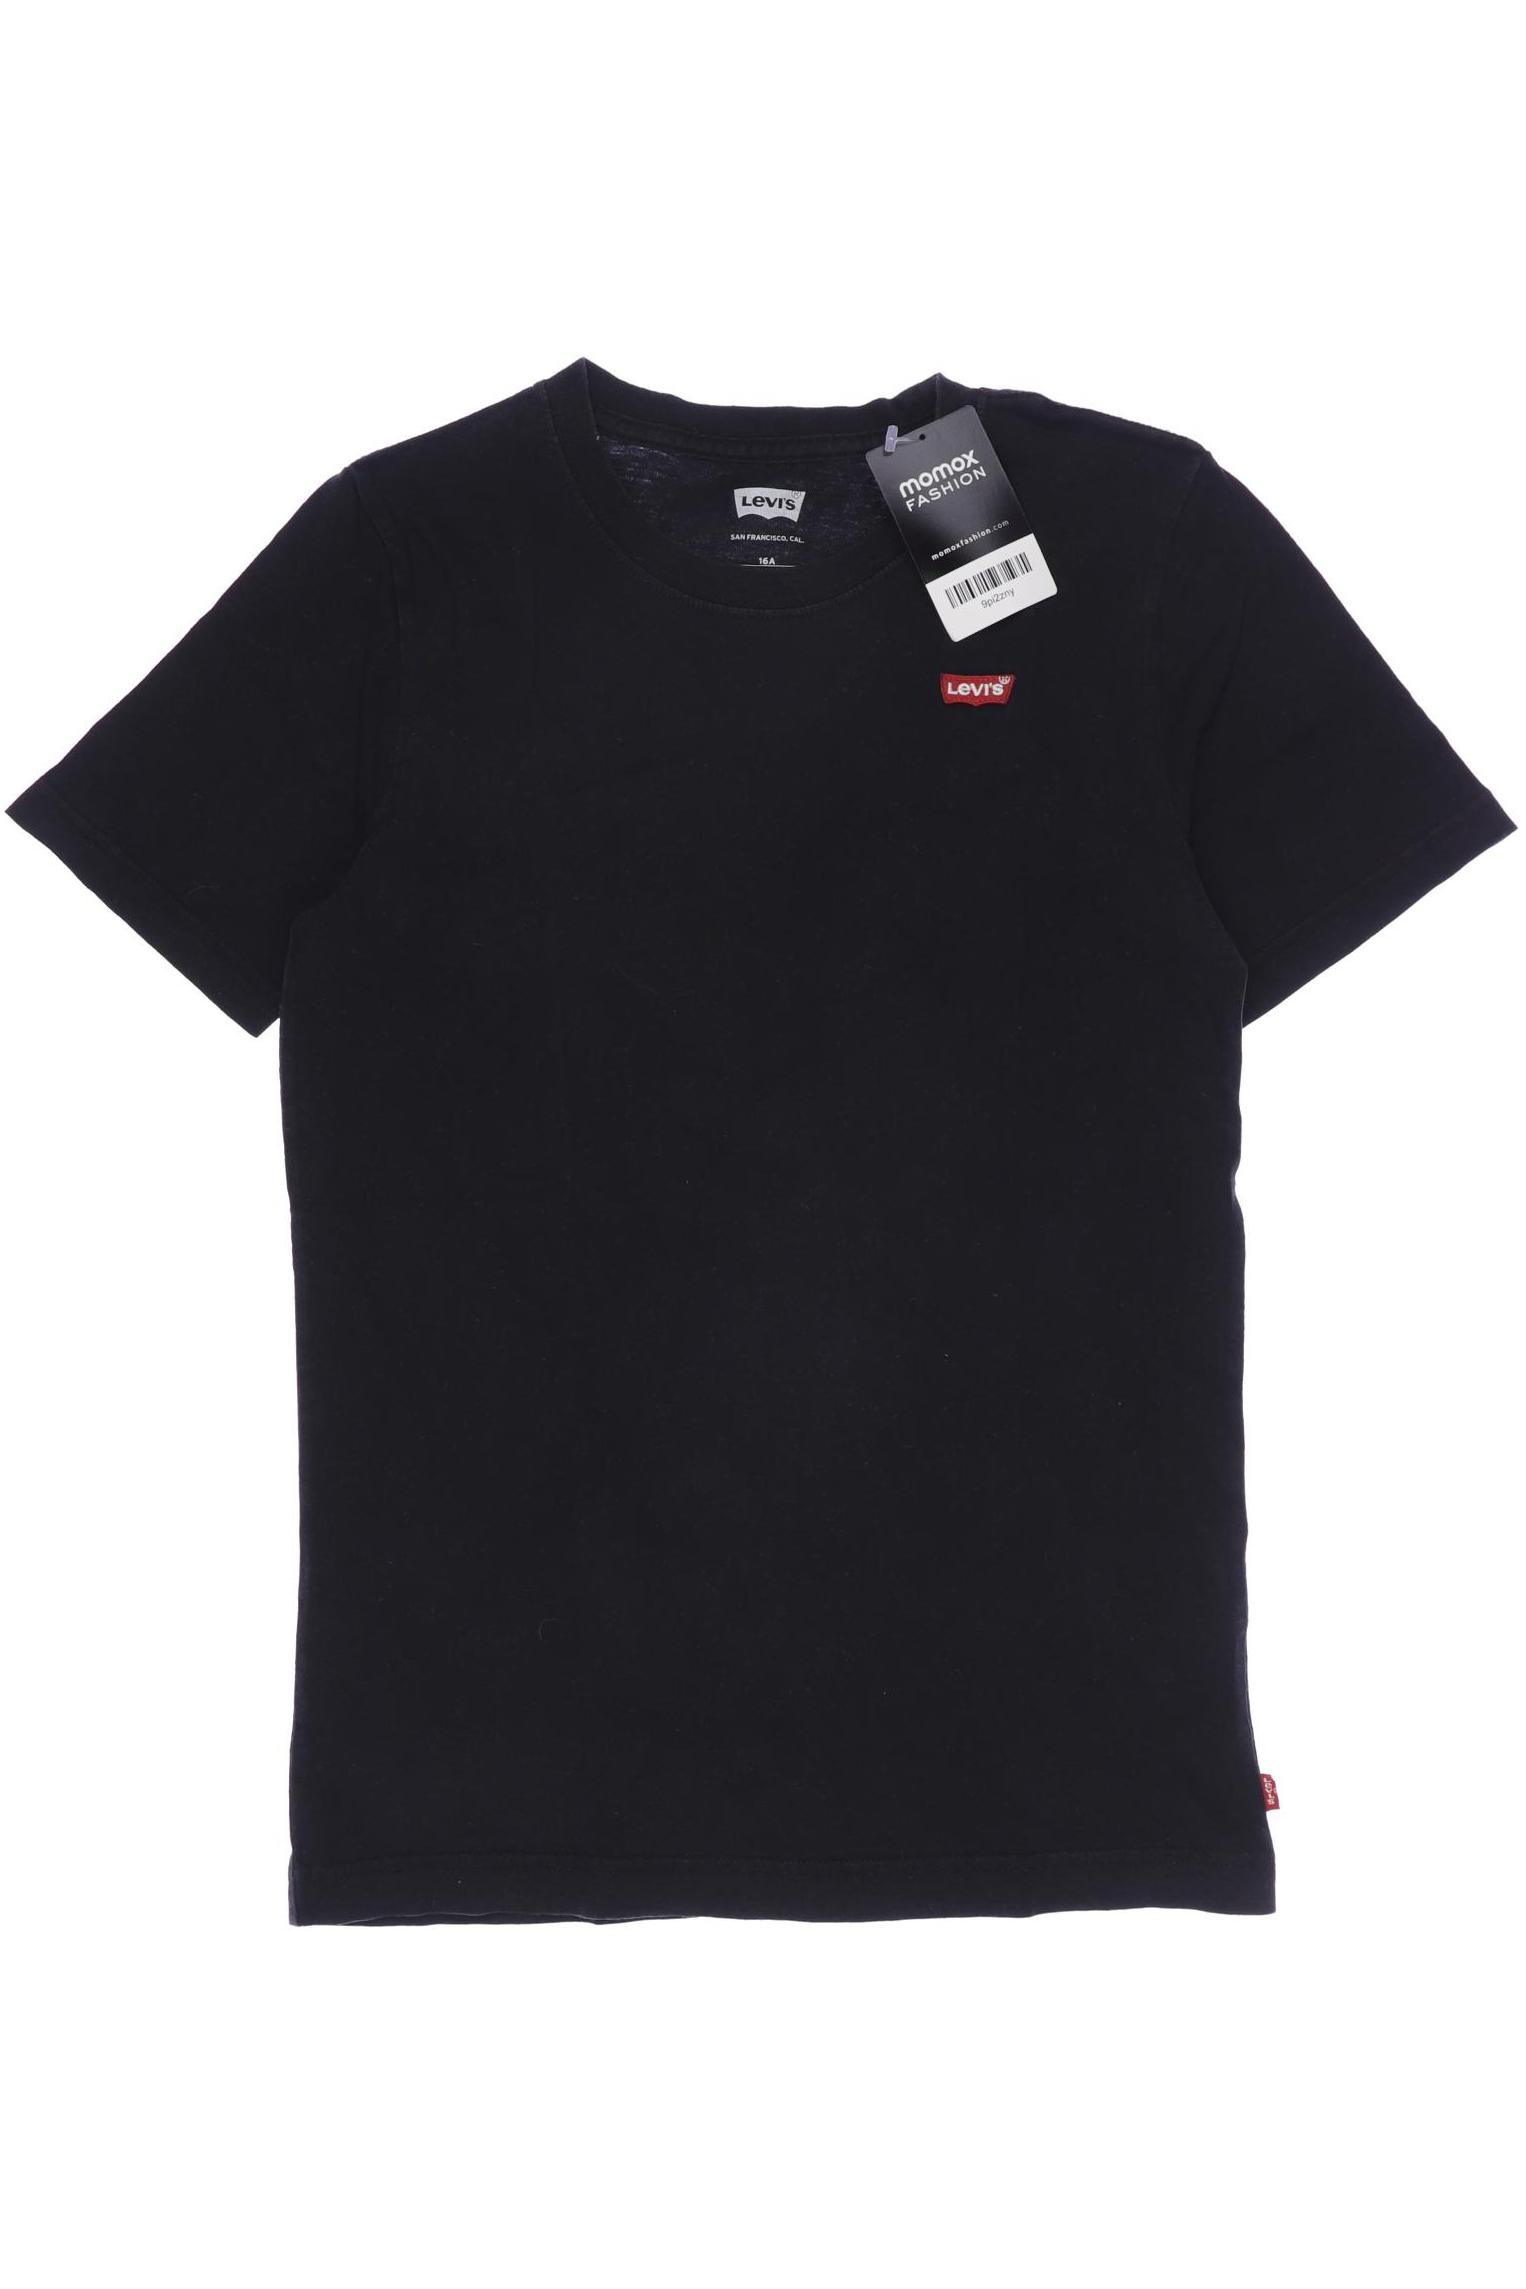 Levis Herren T-Shirt, schwarz, Gr. 176 von Levis